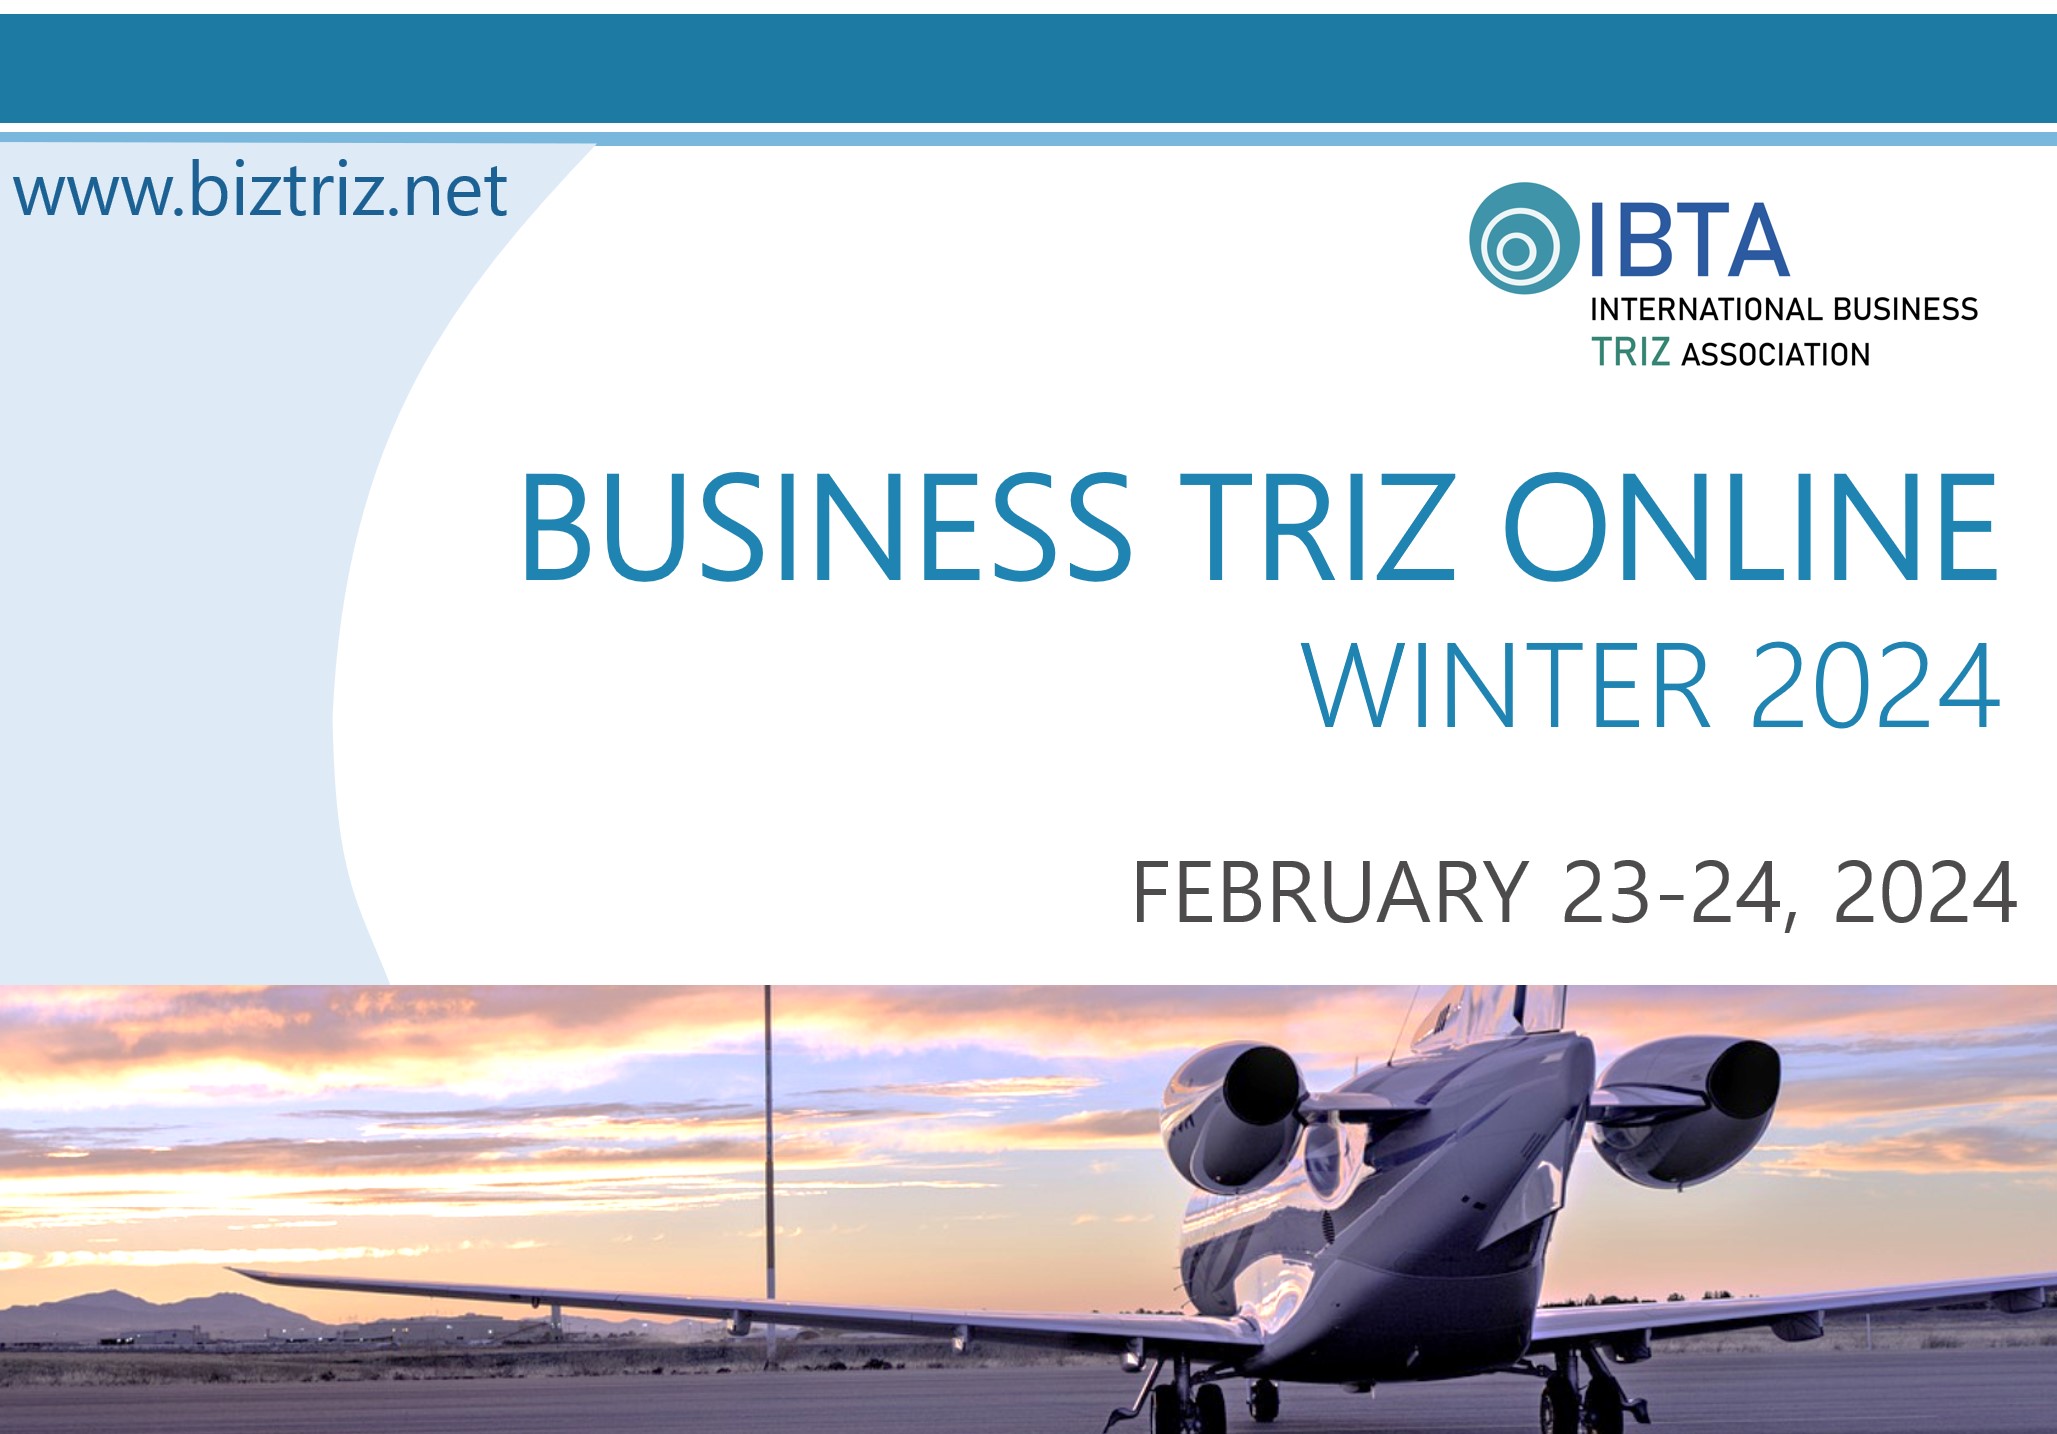 PowerPoint Slide Show IBTA Online Business TRIZ Winter 2024.pptx 11 06 2023 12 02 26